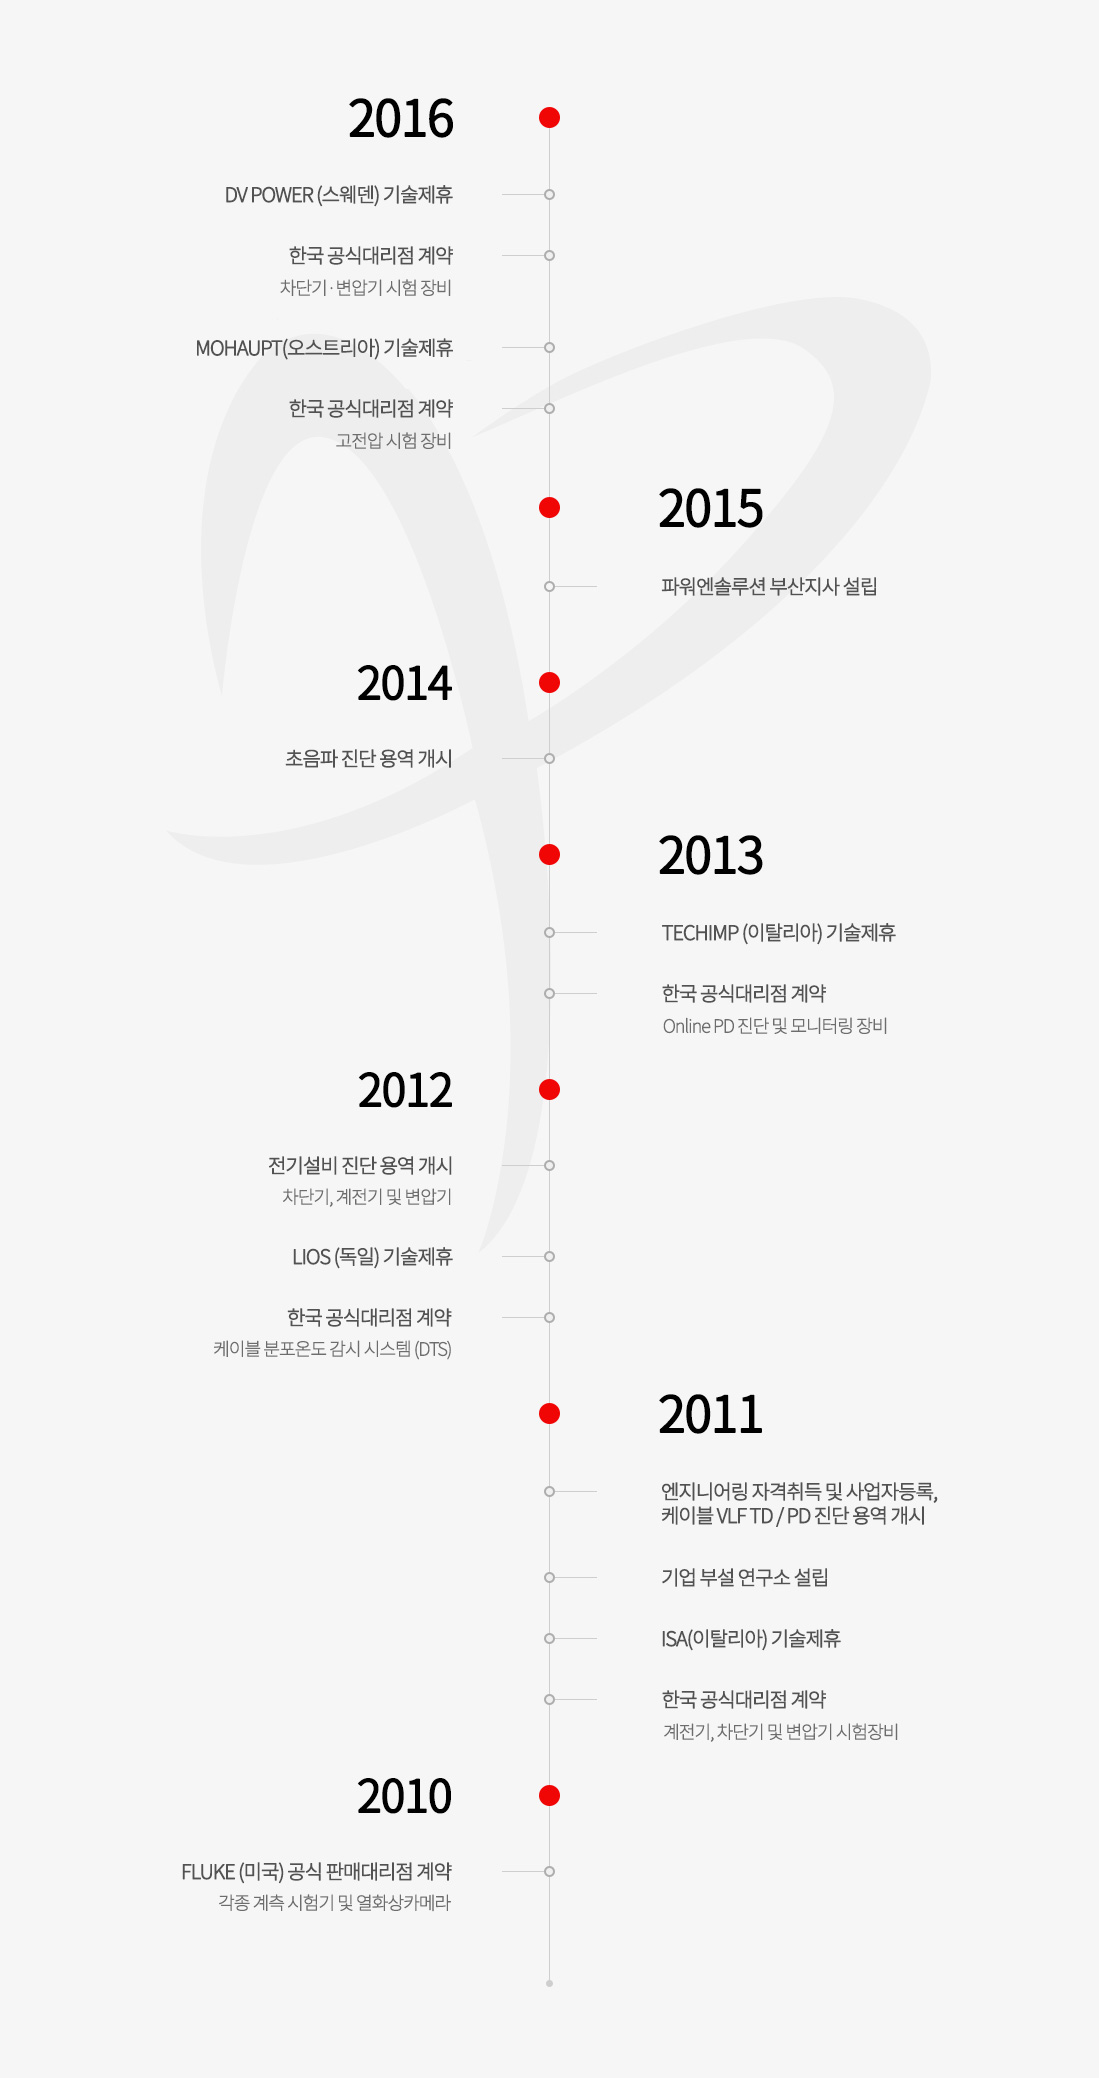 2010년부터 2015년까지 파워엔솔루션의 연혁